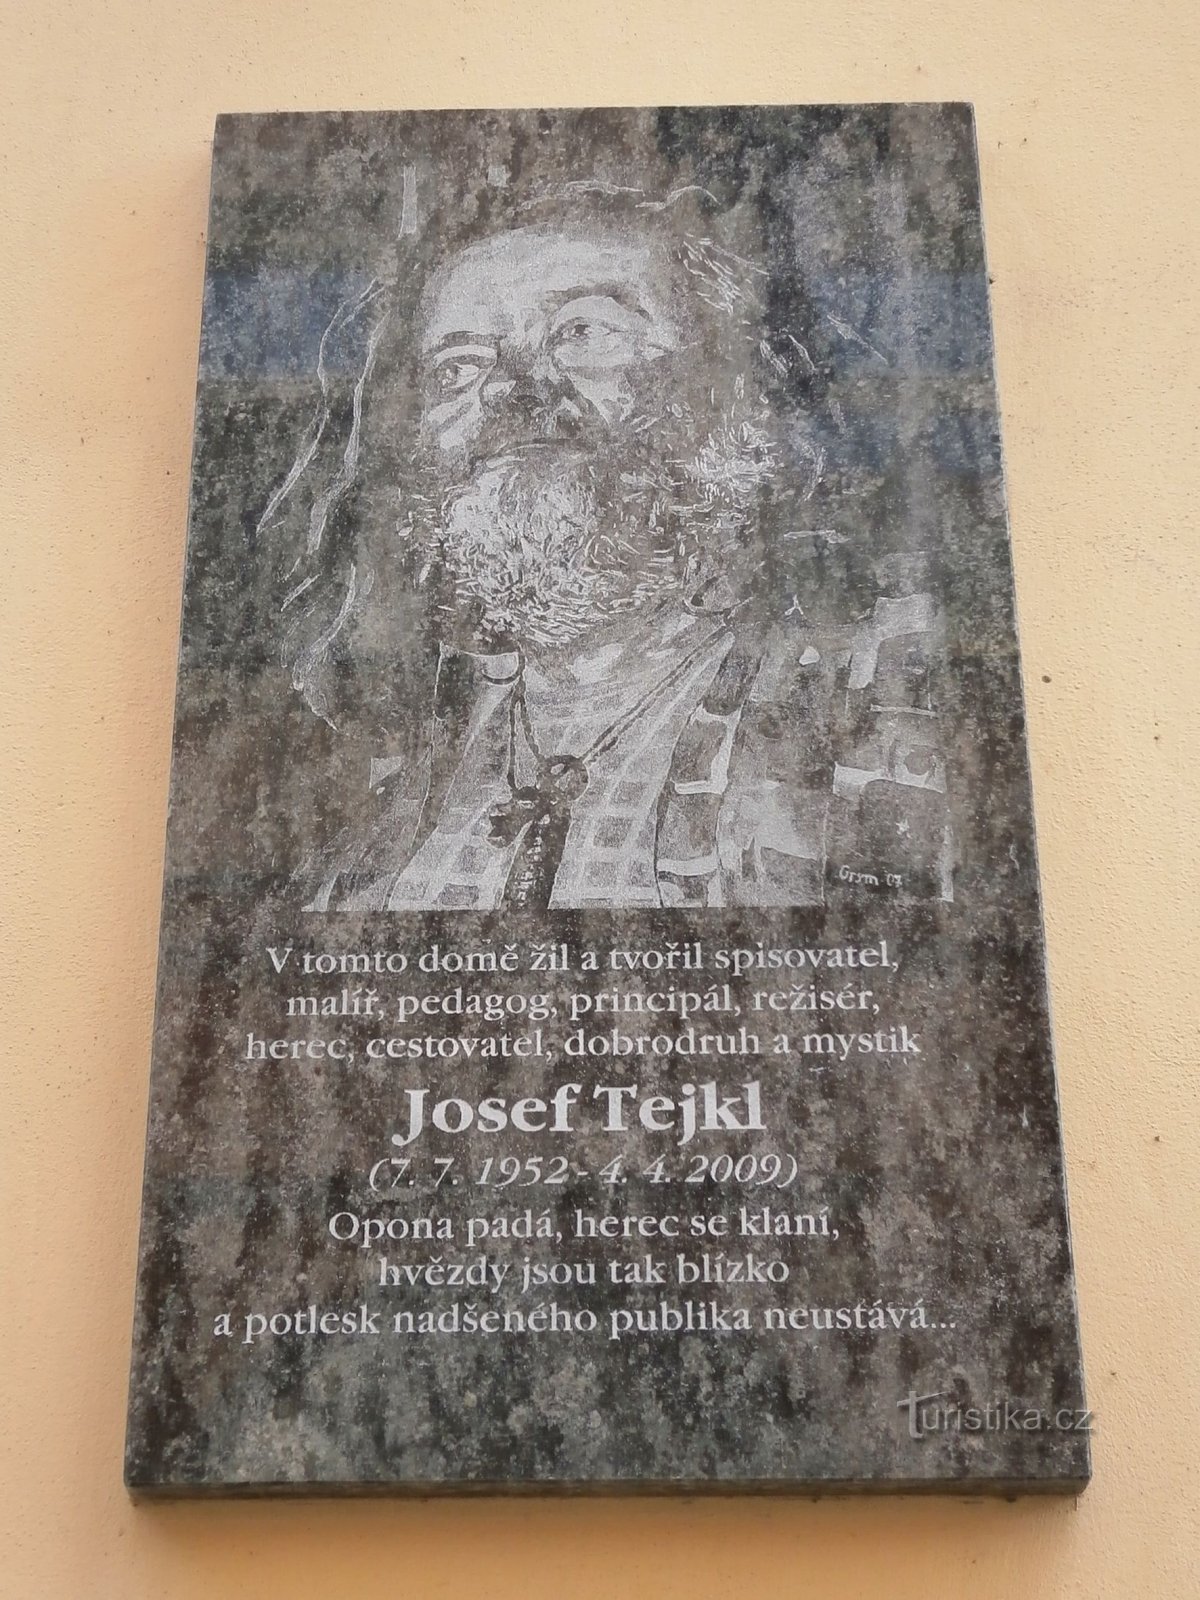 Αναμνηστική πλακέτα Josef Tejkl (Hradec Králové, 15.7.2013)